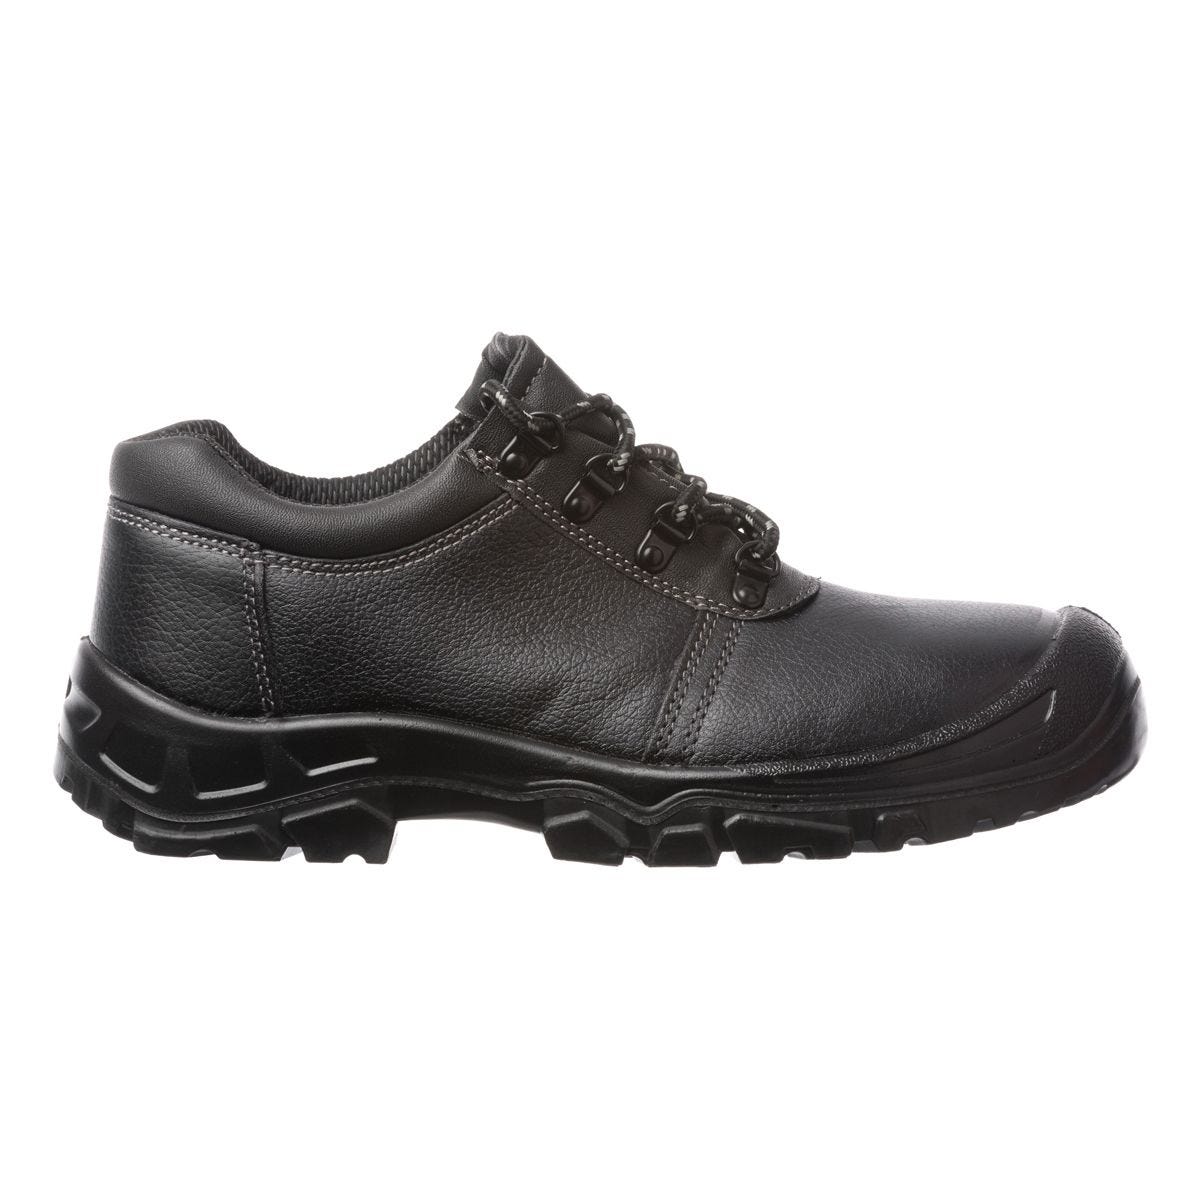 Chaussures de sécurité basses Azurite II S3 ESD noir - Coverguard - Taille 45 0